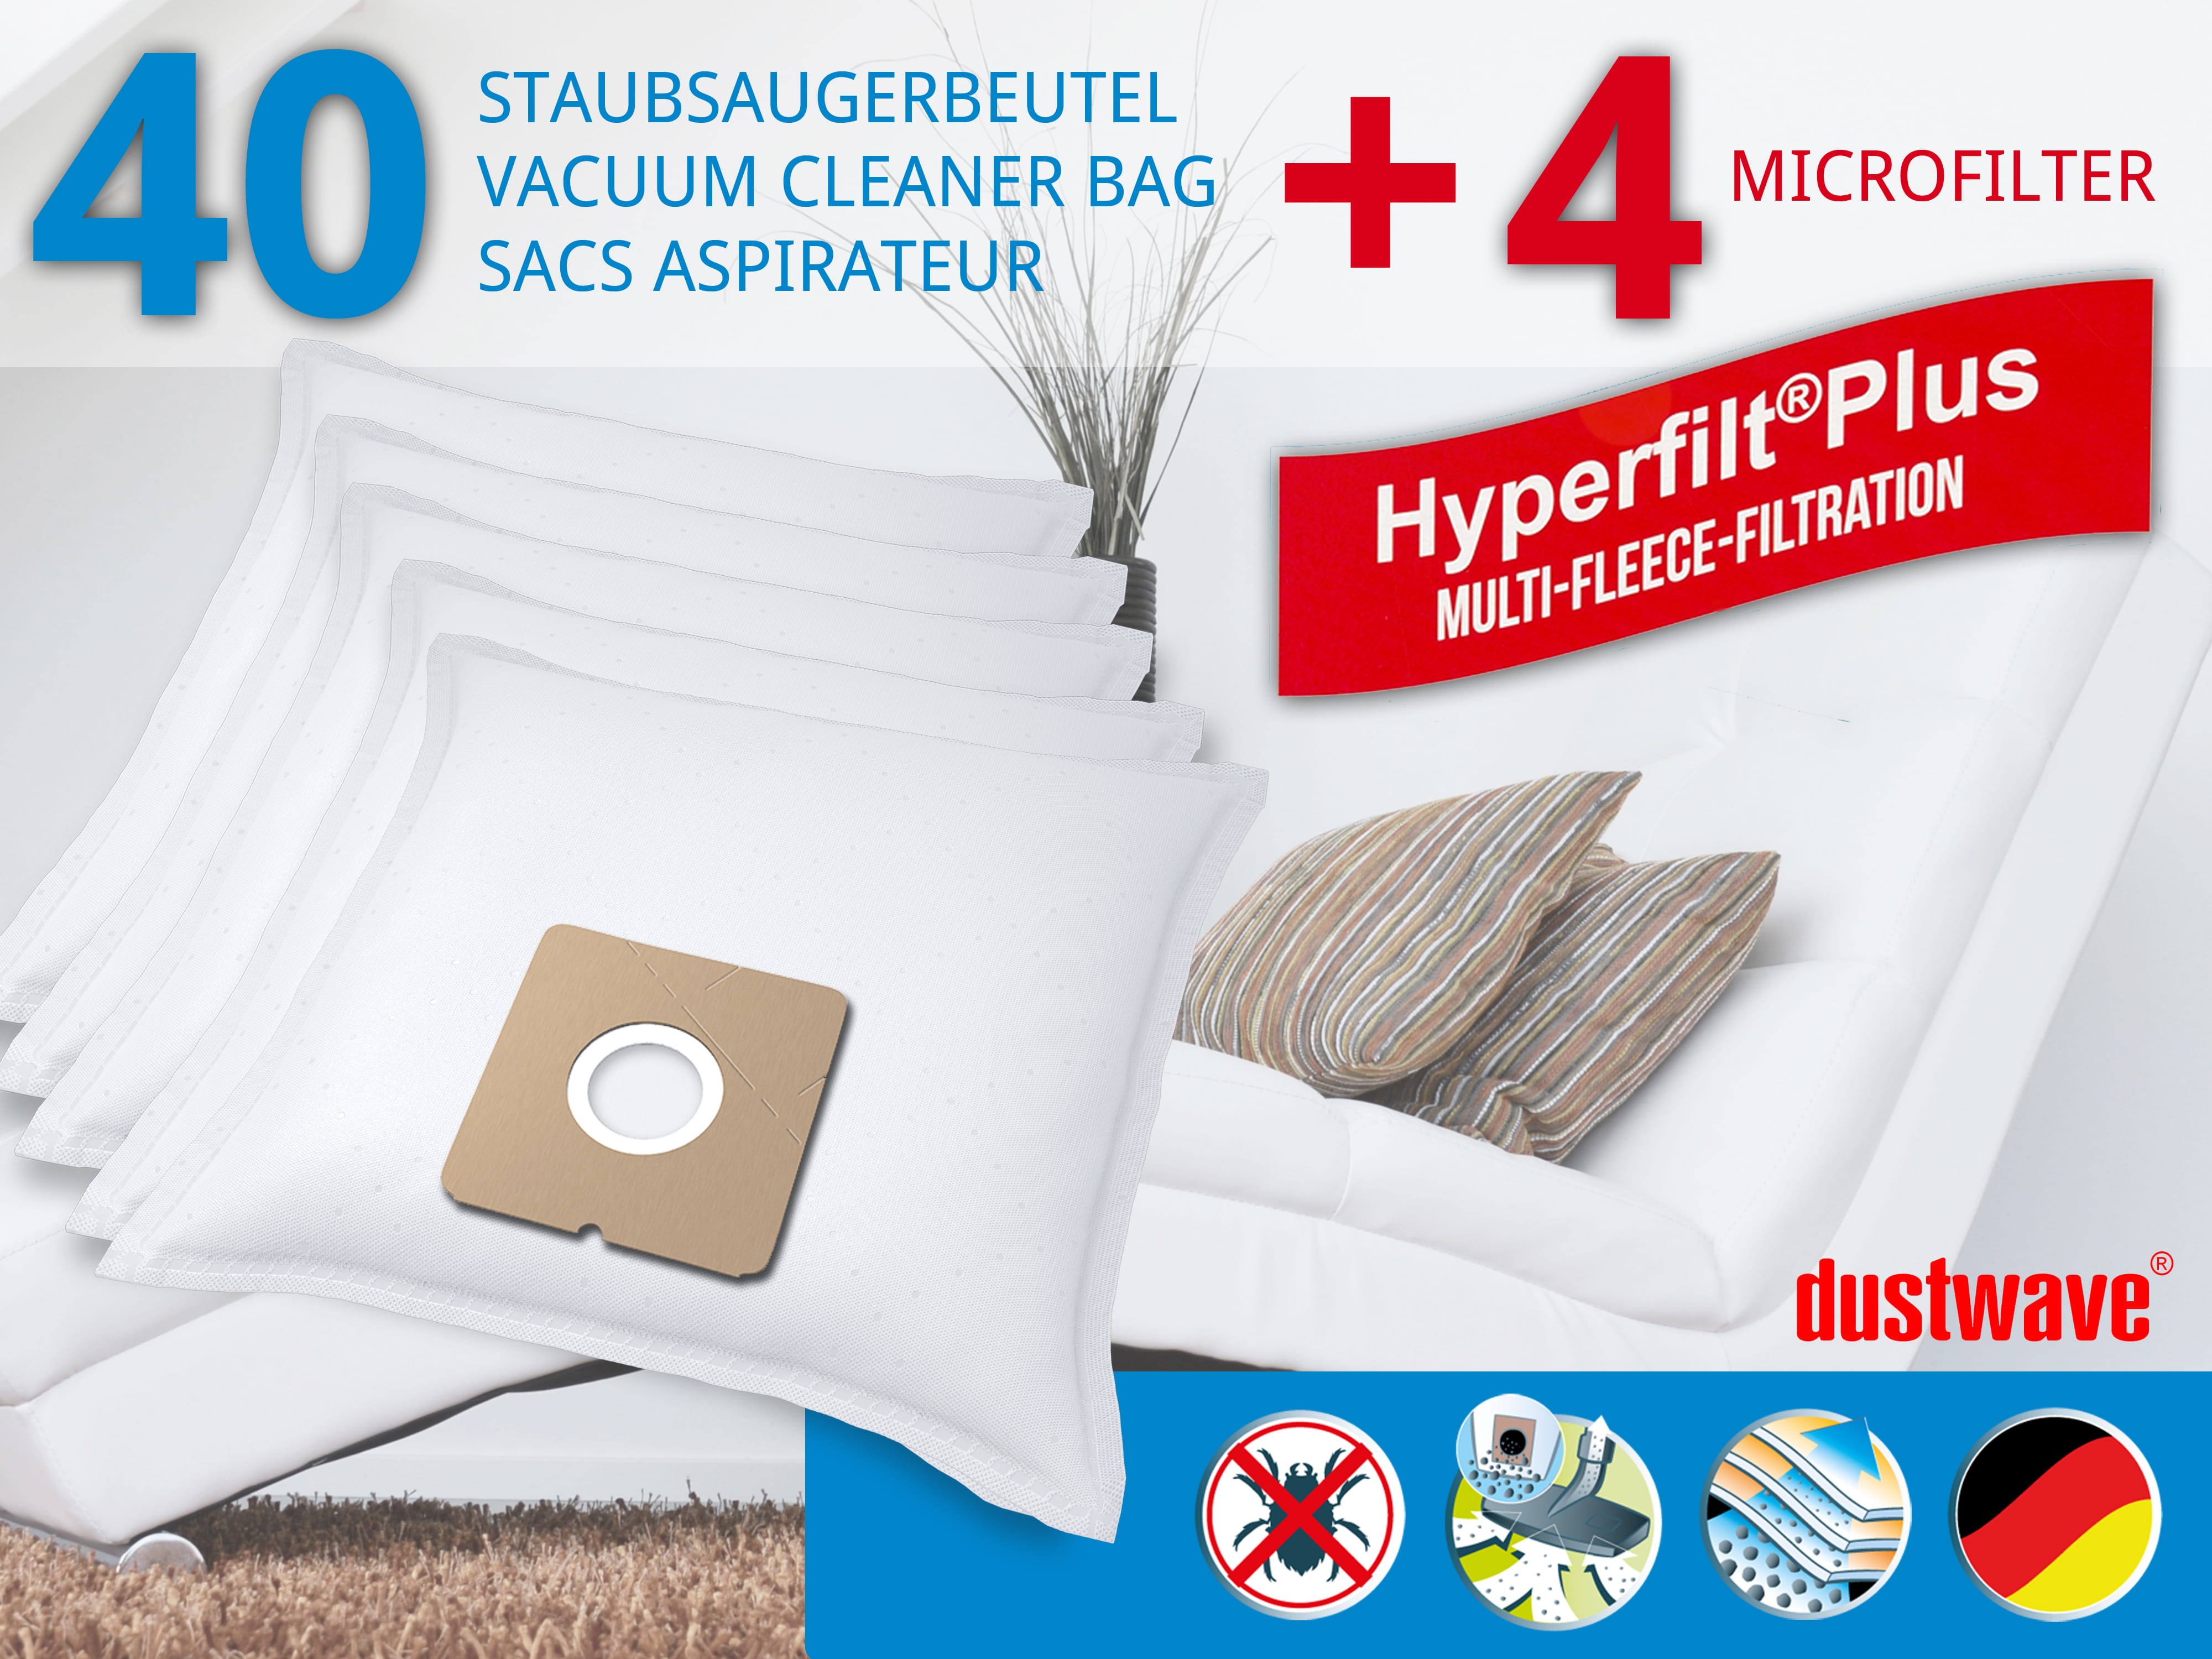 Dustwave® 40 Staubsaugerbeutel für Budget VC 1430 - hocheffizient, mehrlagiges Mikrovlies mit Hygieneverschluss - Made in Germany